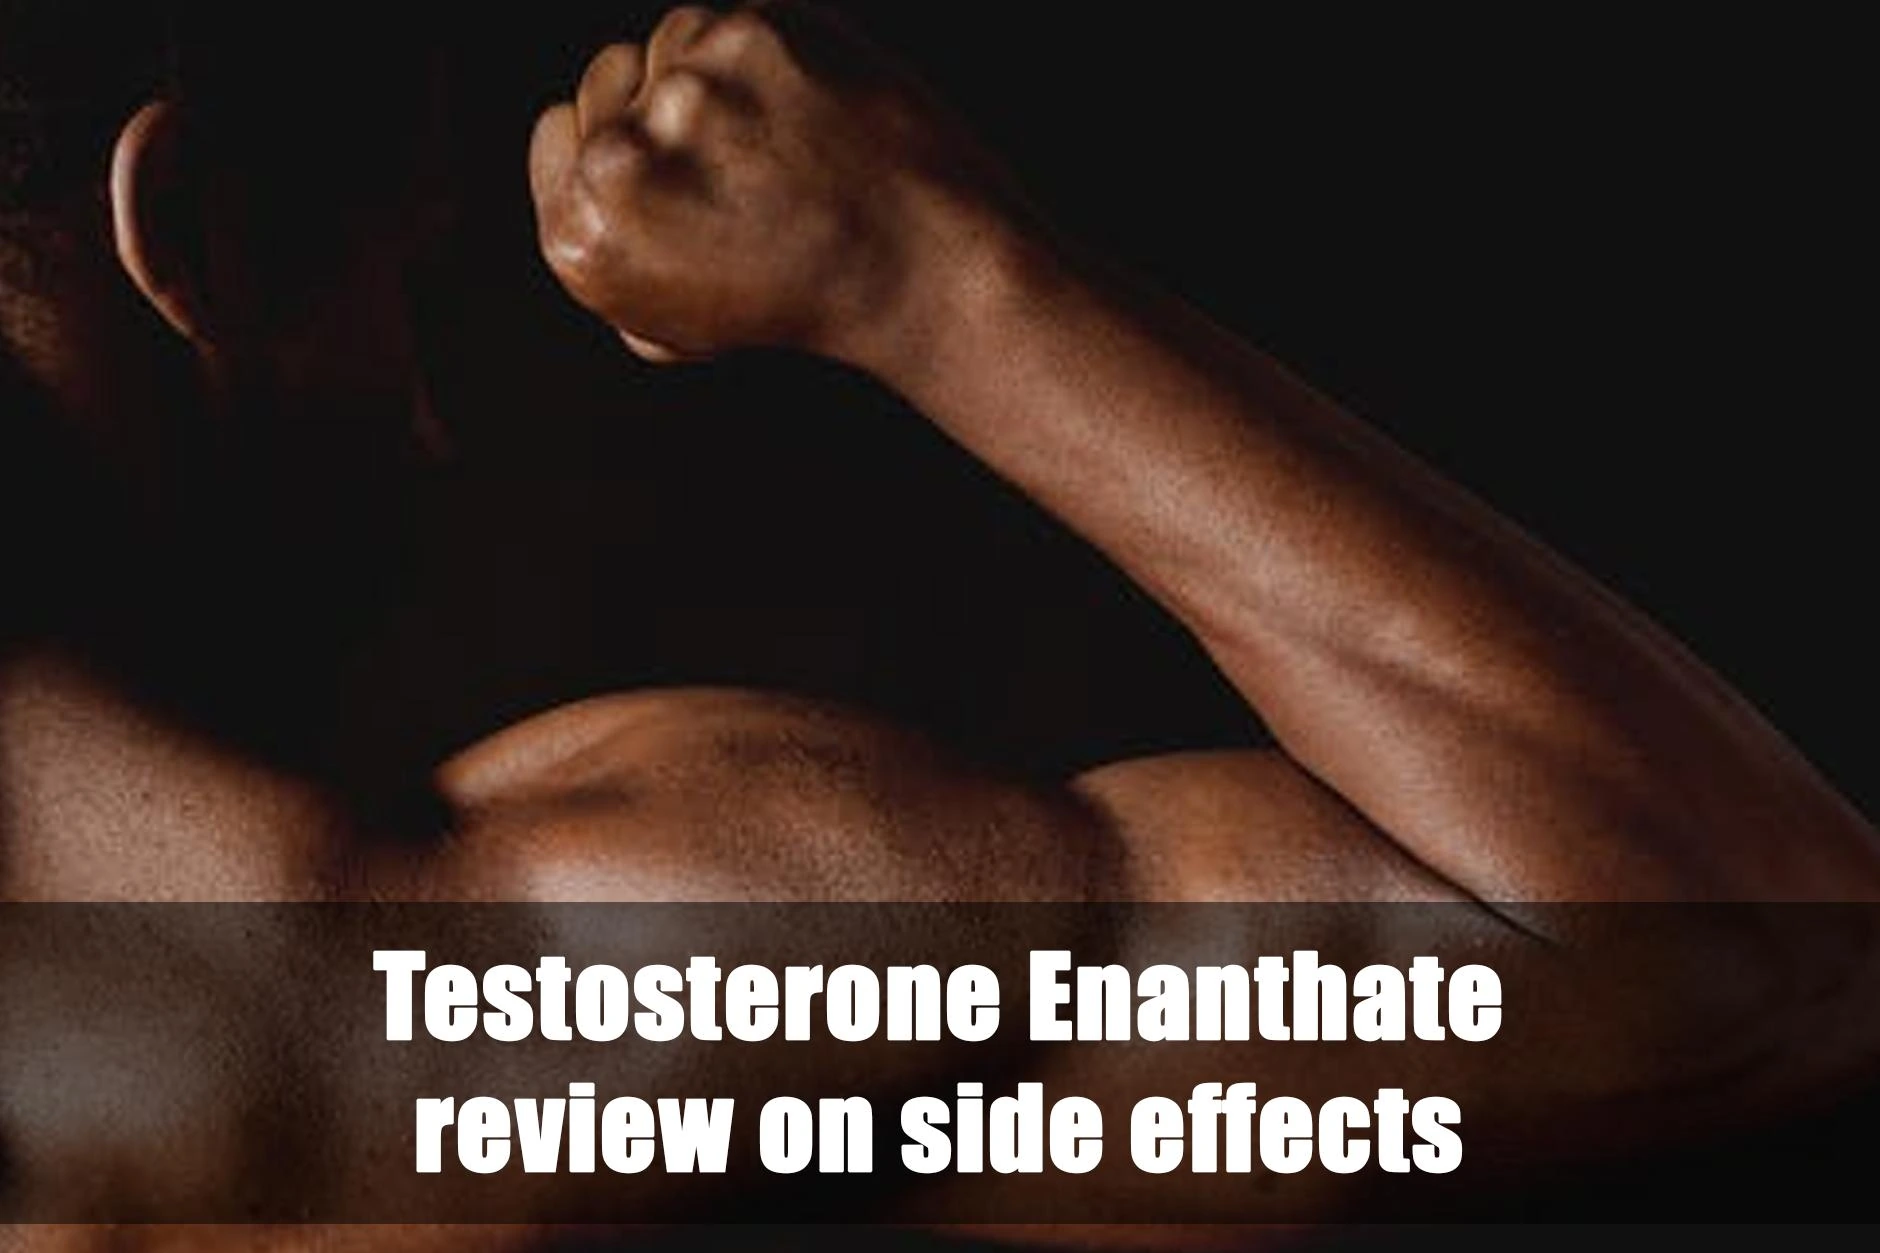 Revisione degli effetti collaterali del testosterone enantato